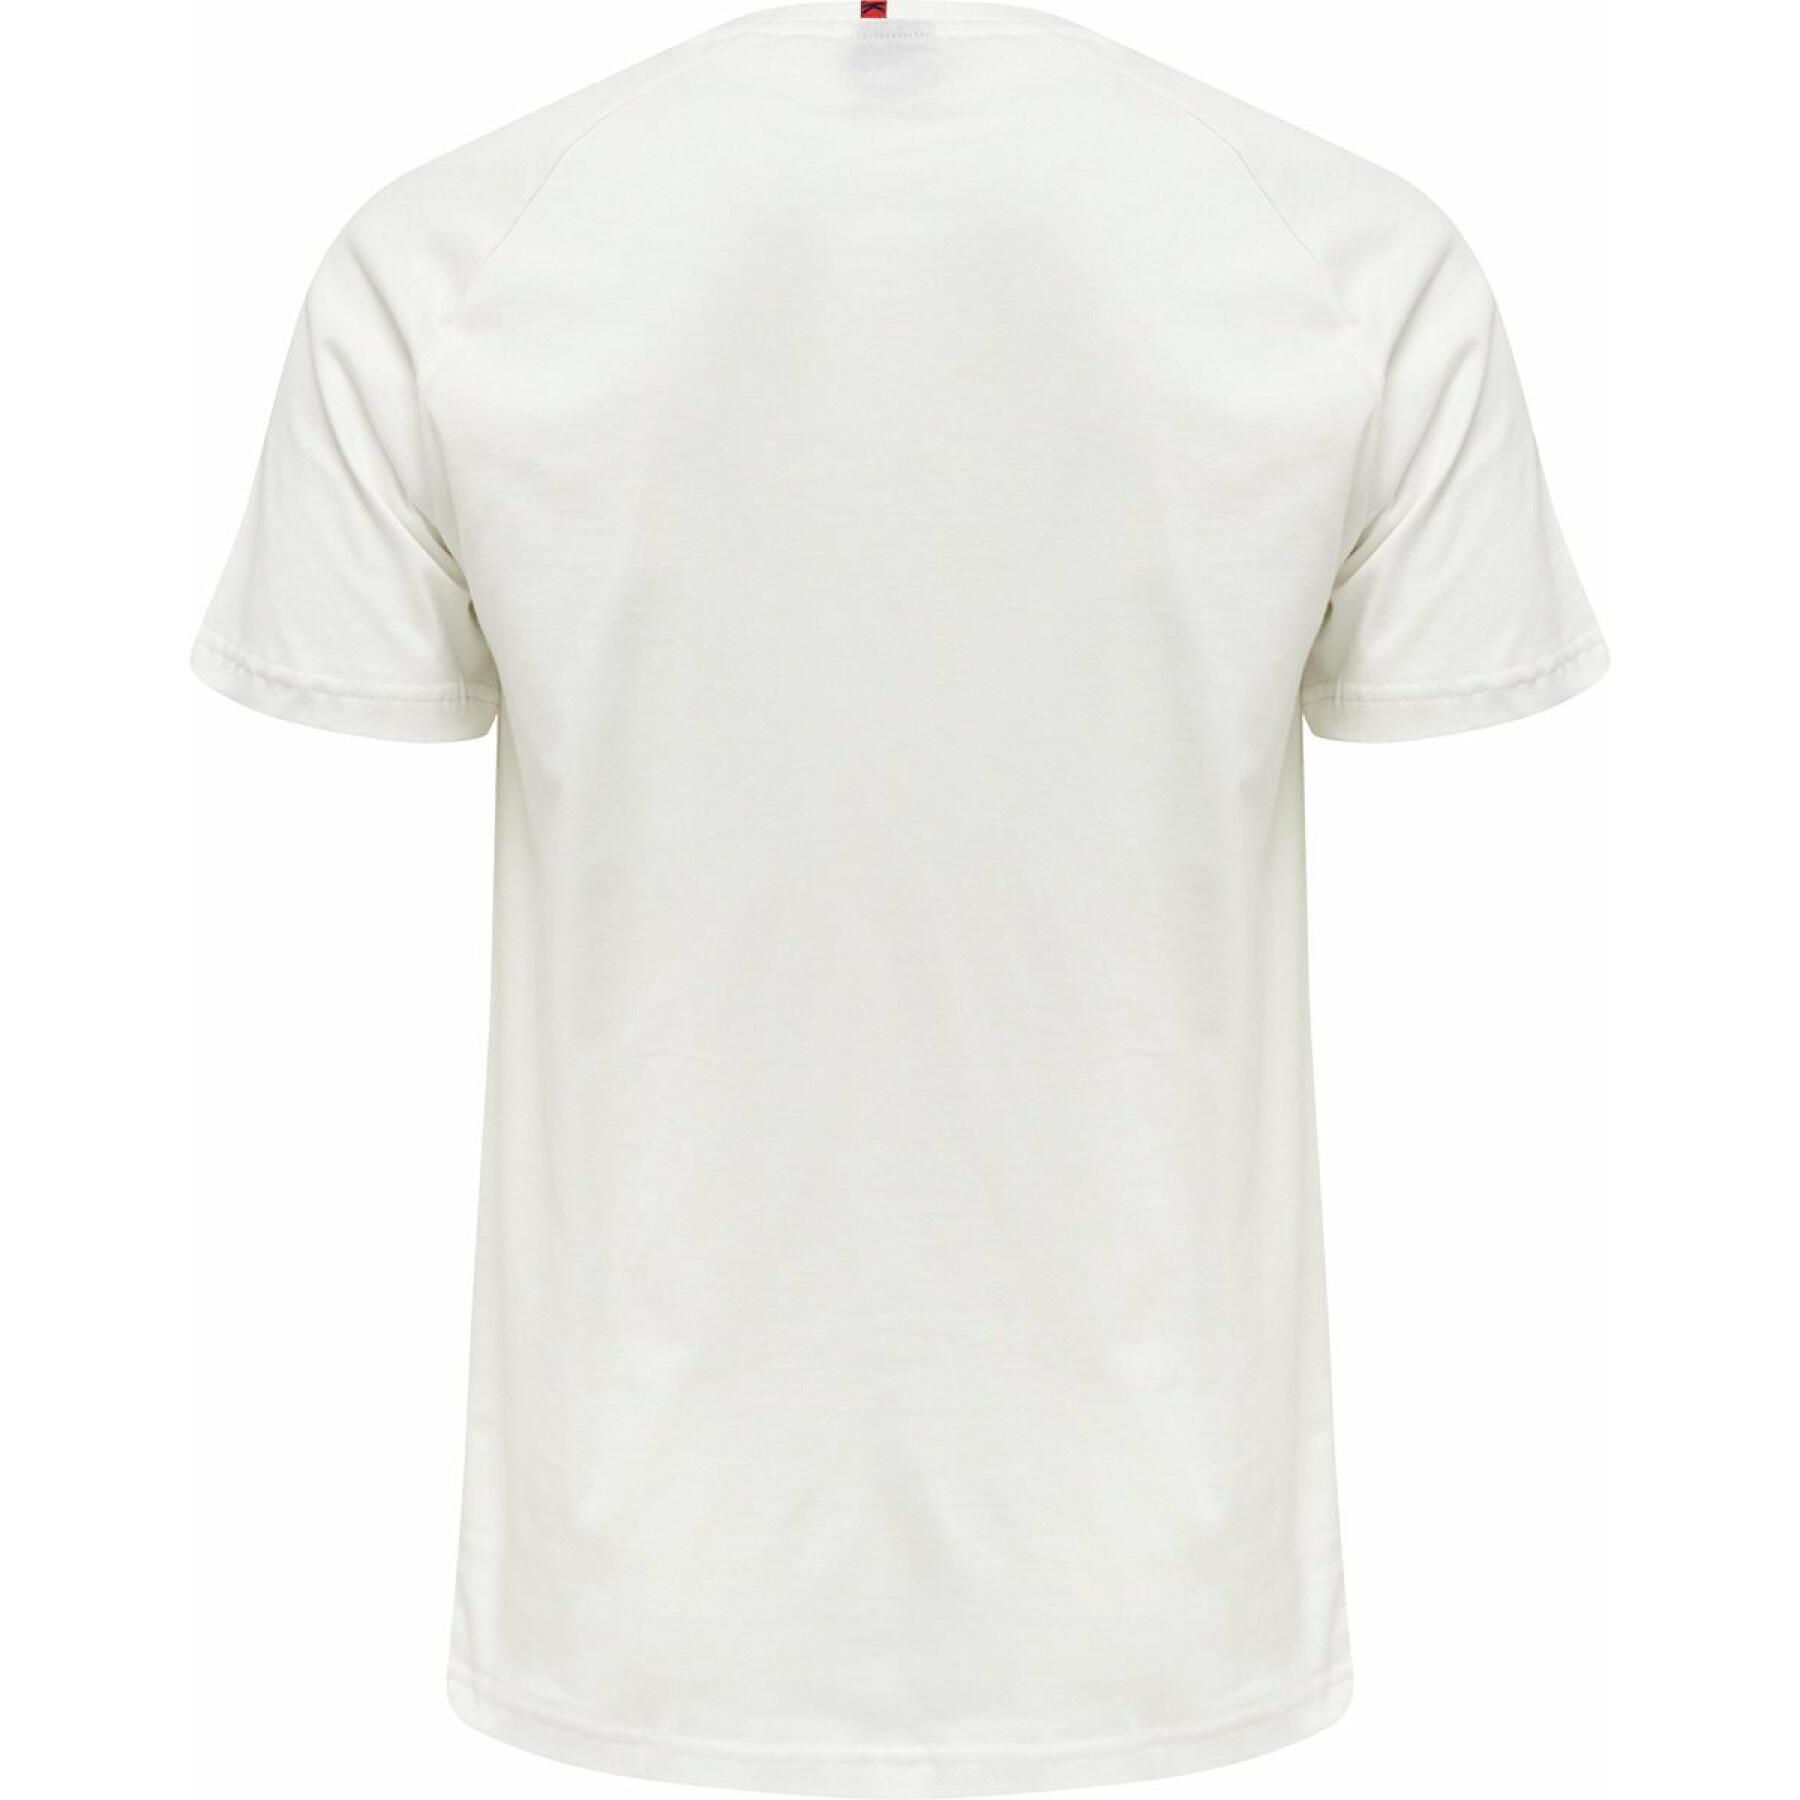 T-shirt hmlPRO xk cotton